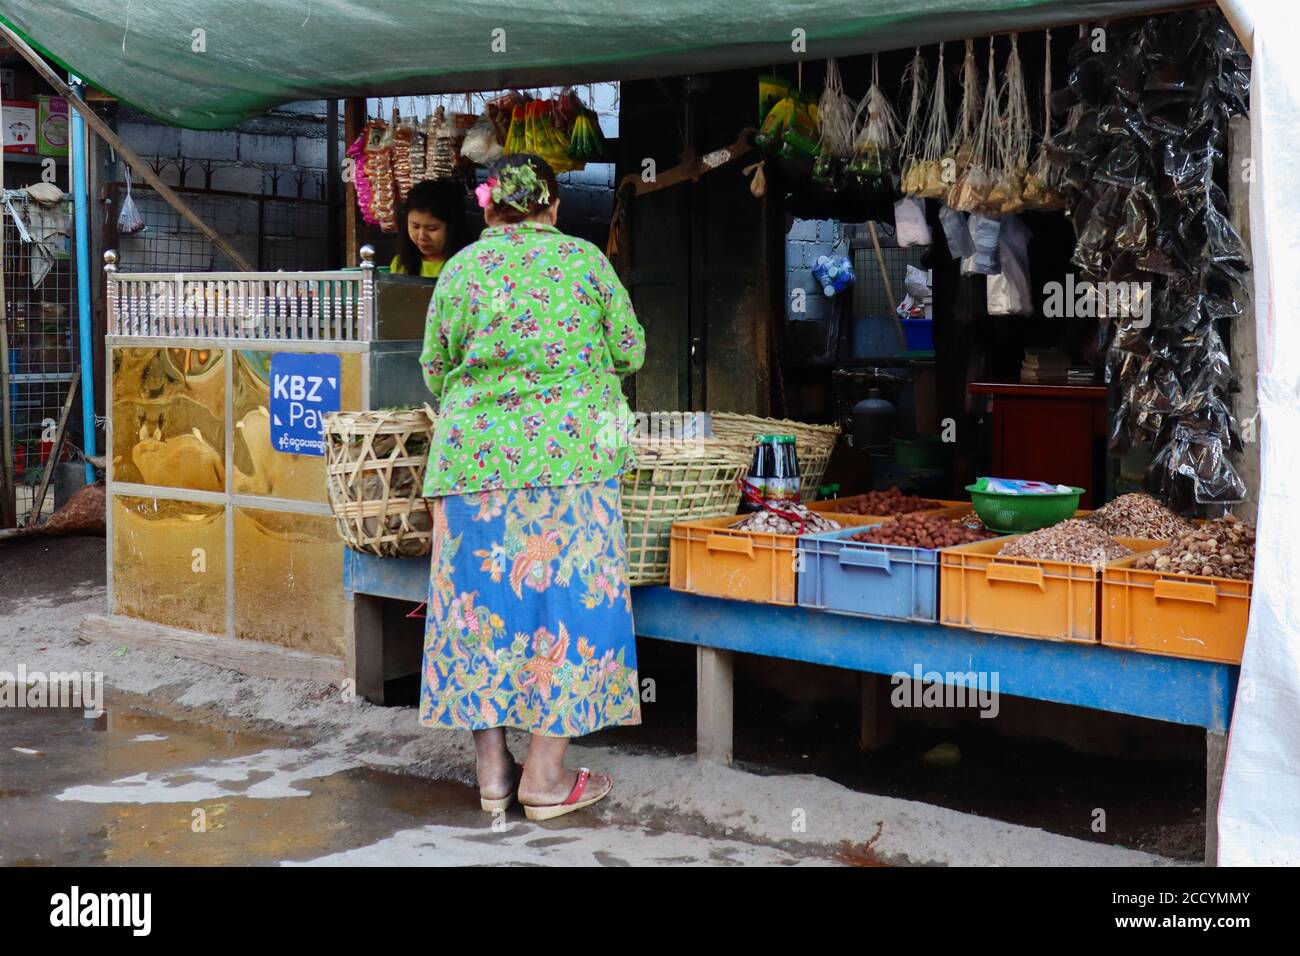 Frau, die Betelnuss von einem Stall kauft. Shop Verkauf verschiedener Arten von Betelnuss, bereit zu mischen und zu kauen. Traditioneller Brauch in Myanmar, Südostasien Stockfoto